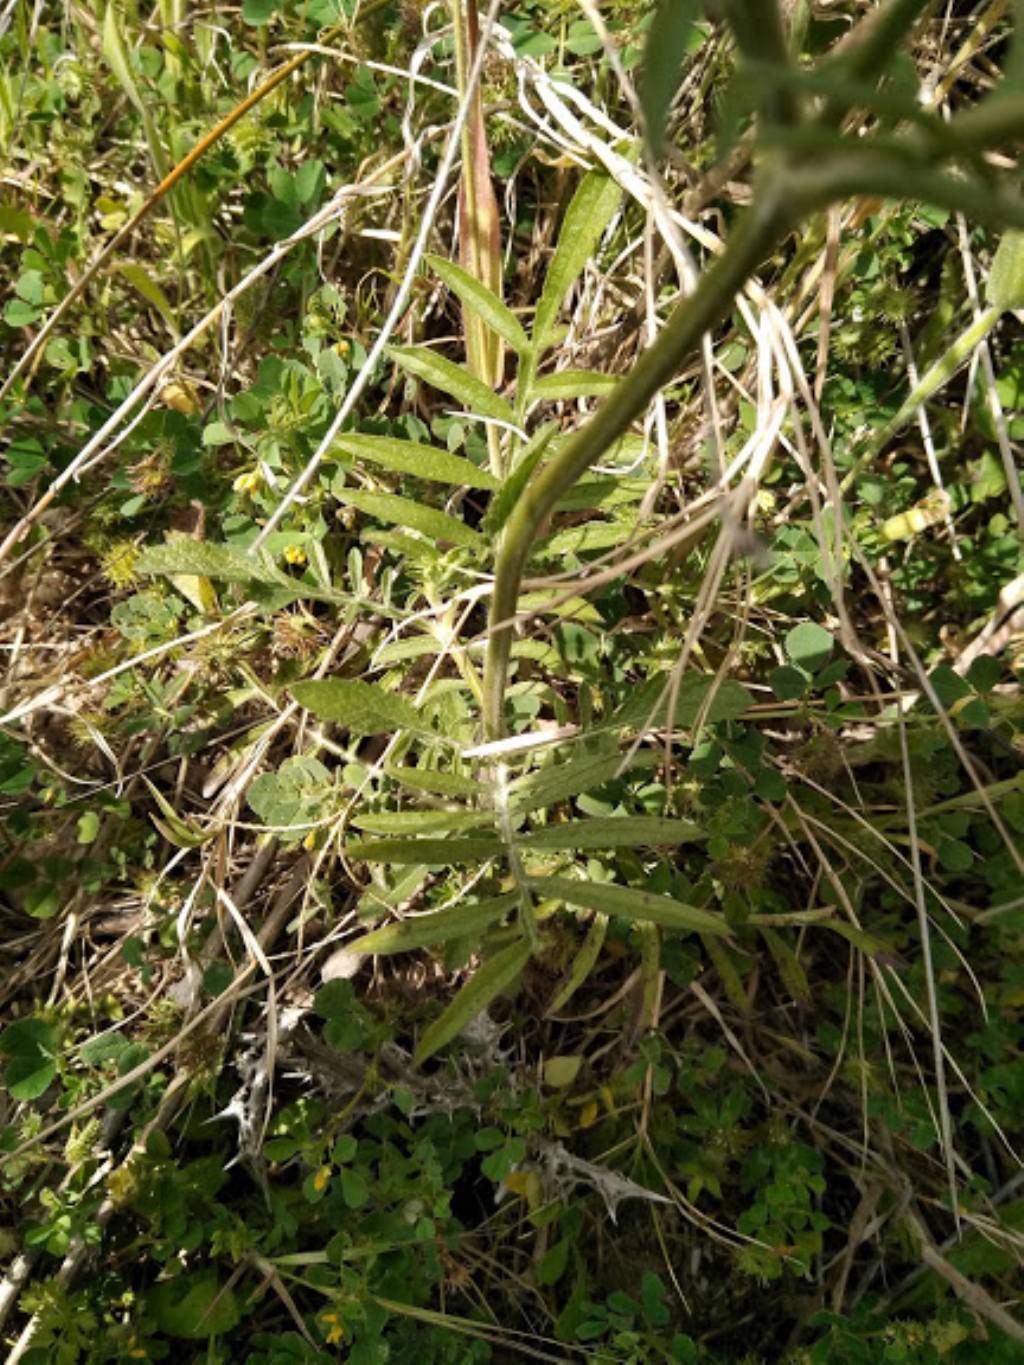 cfr. Sixalix atropurpurea (Caprifoliaceae)